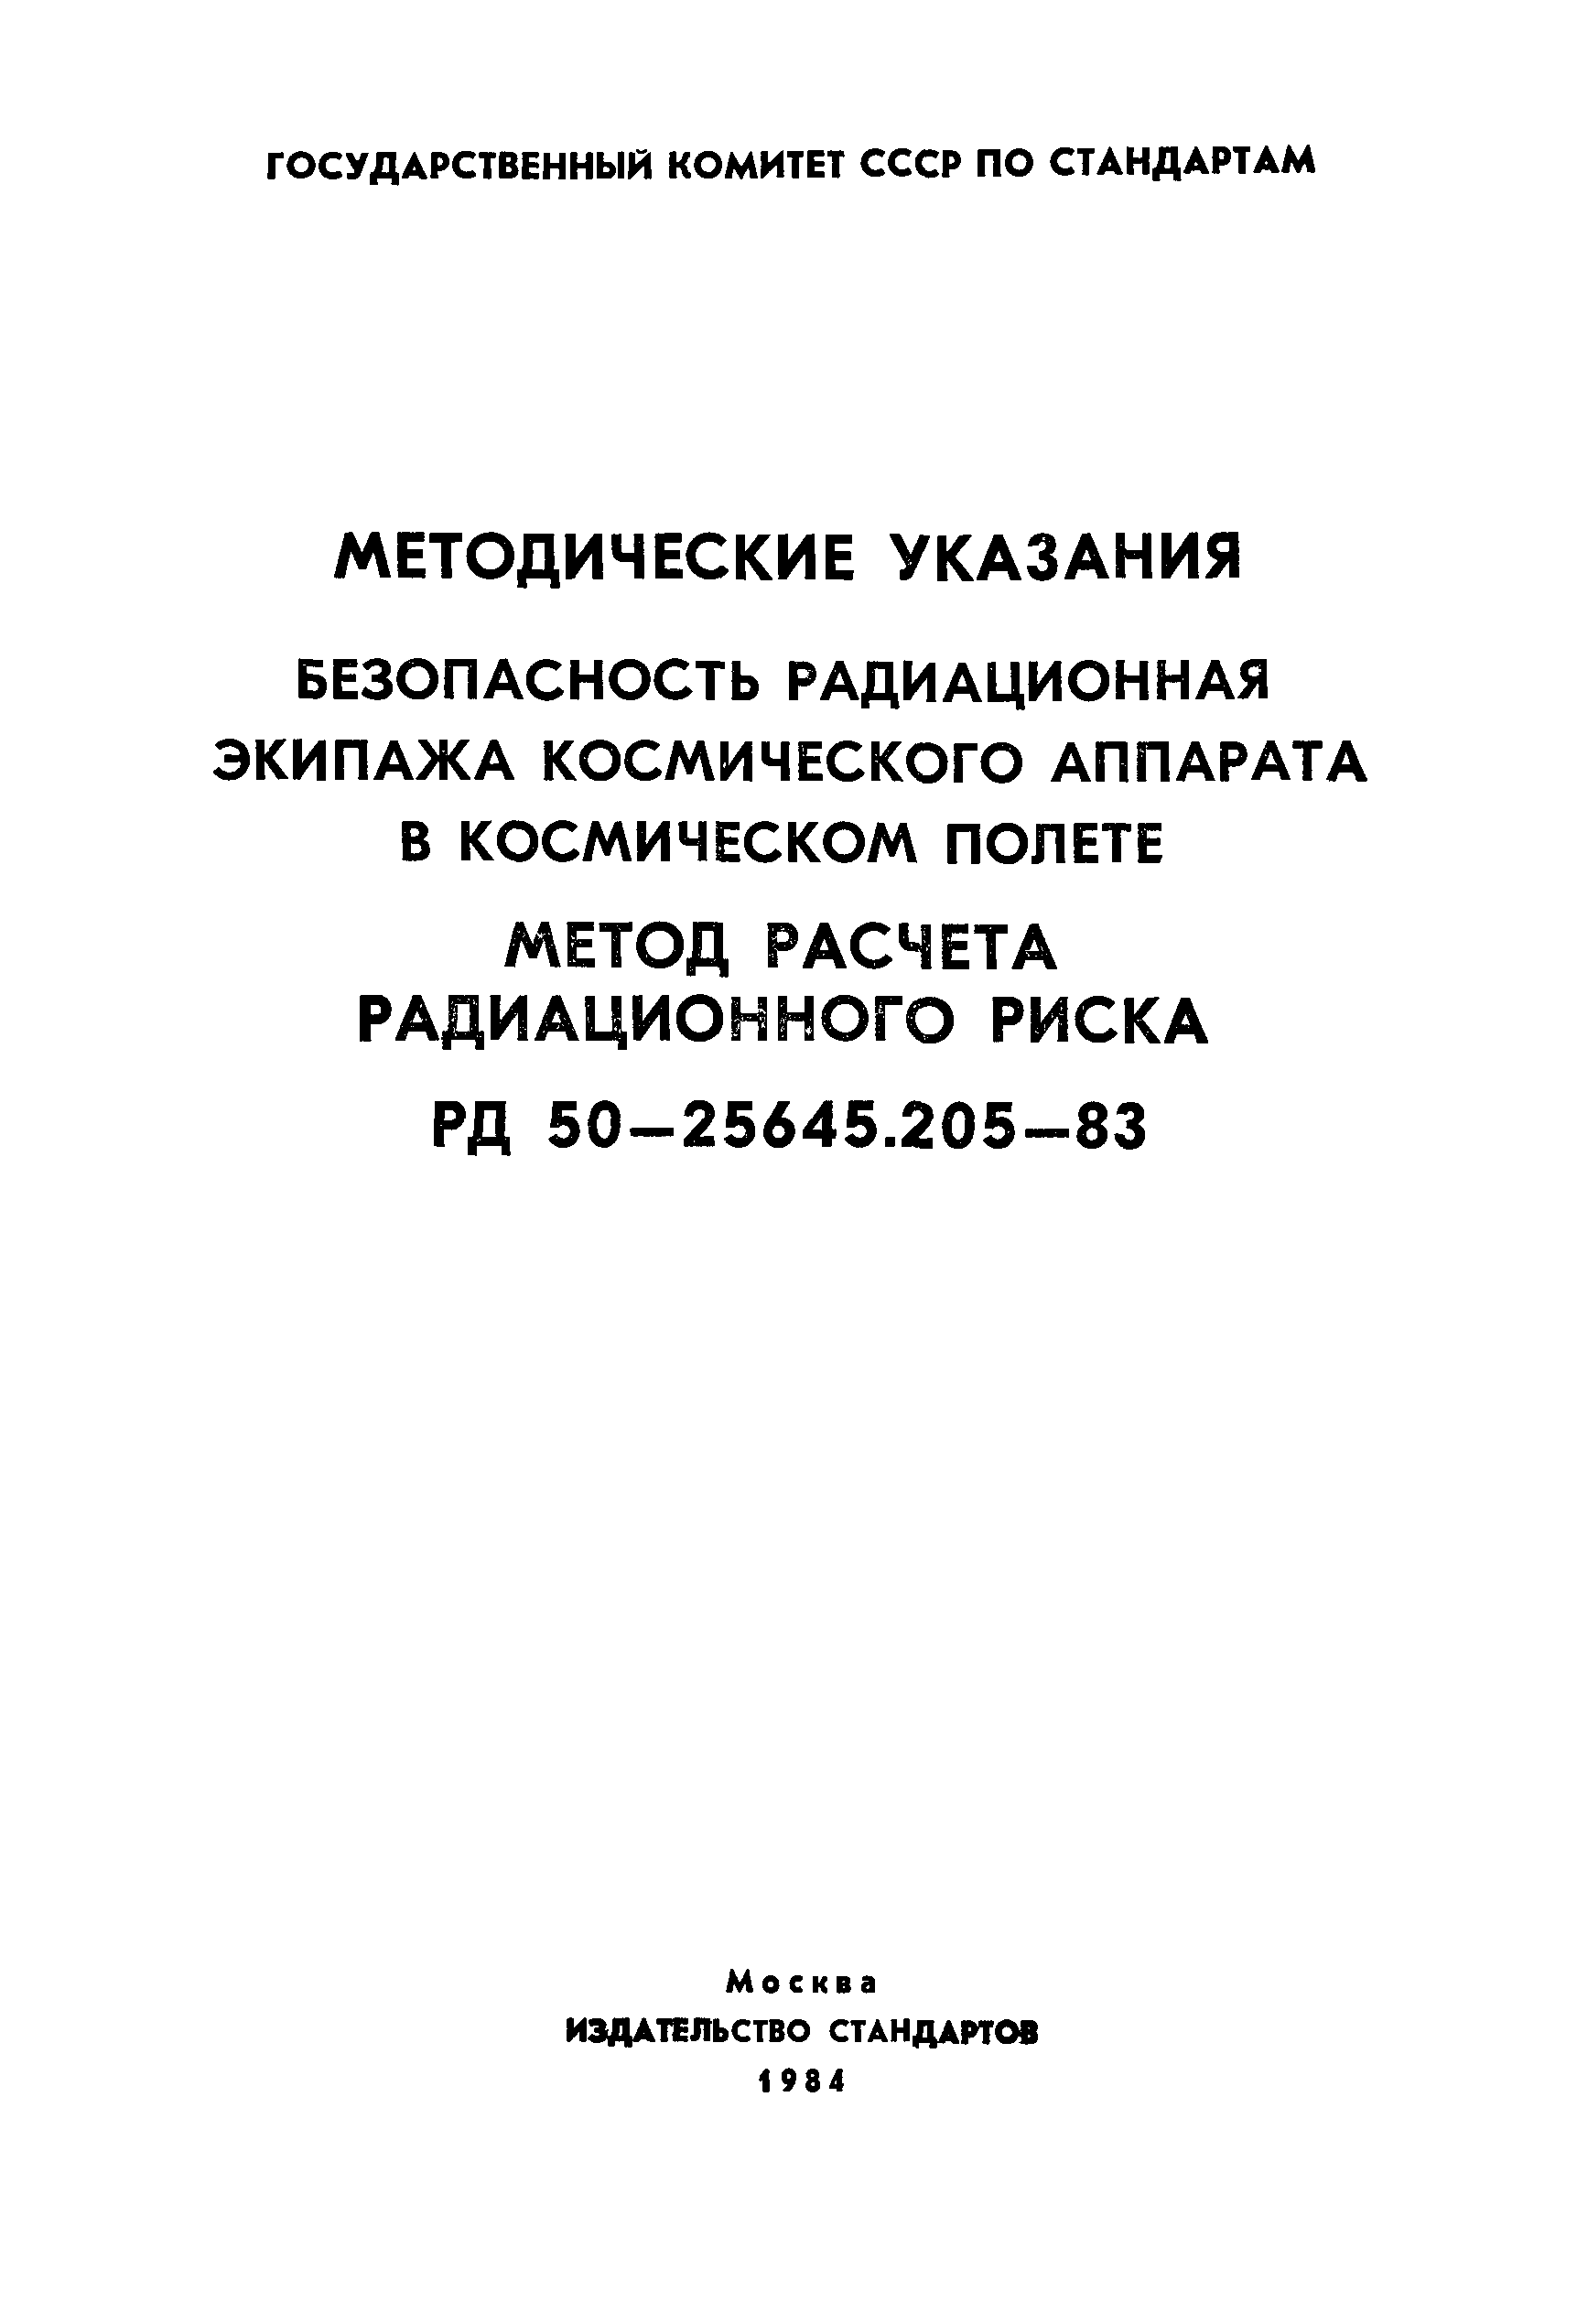 РД 50-25645.205-83